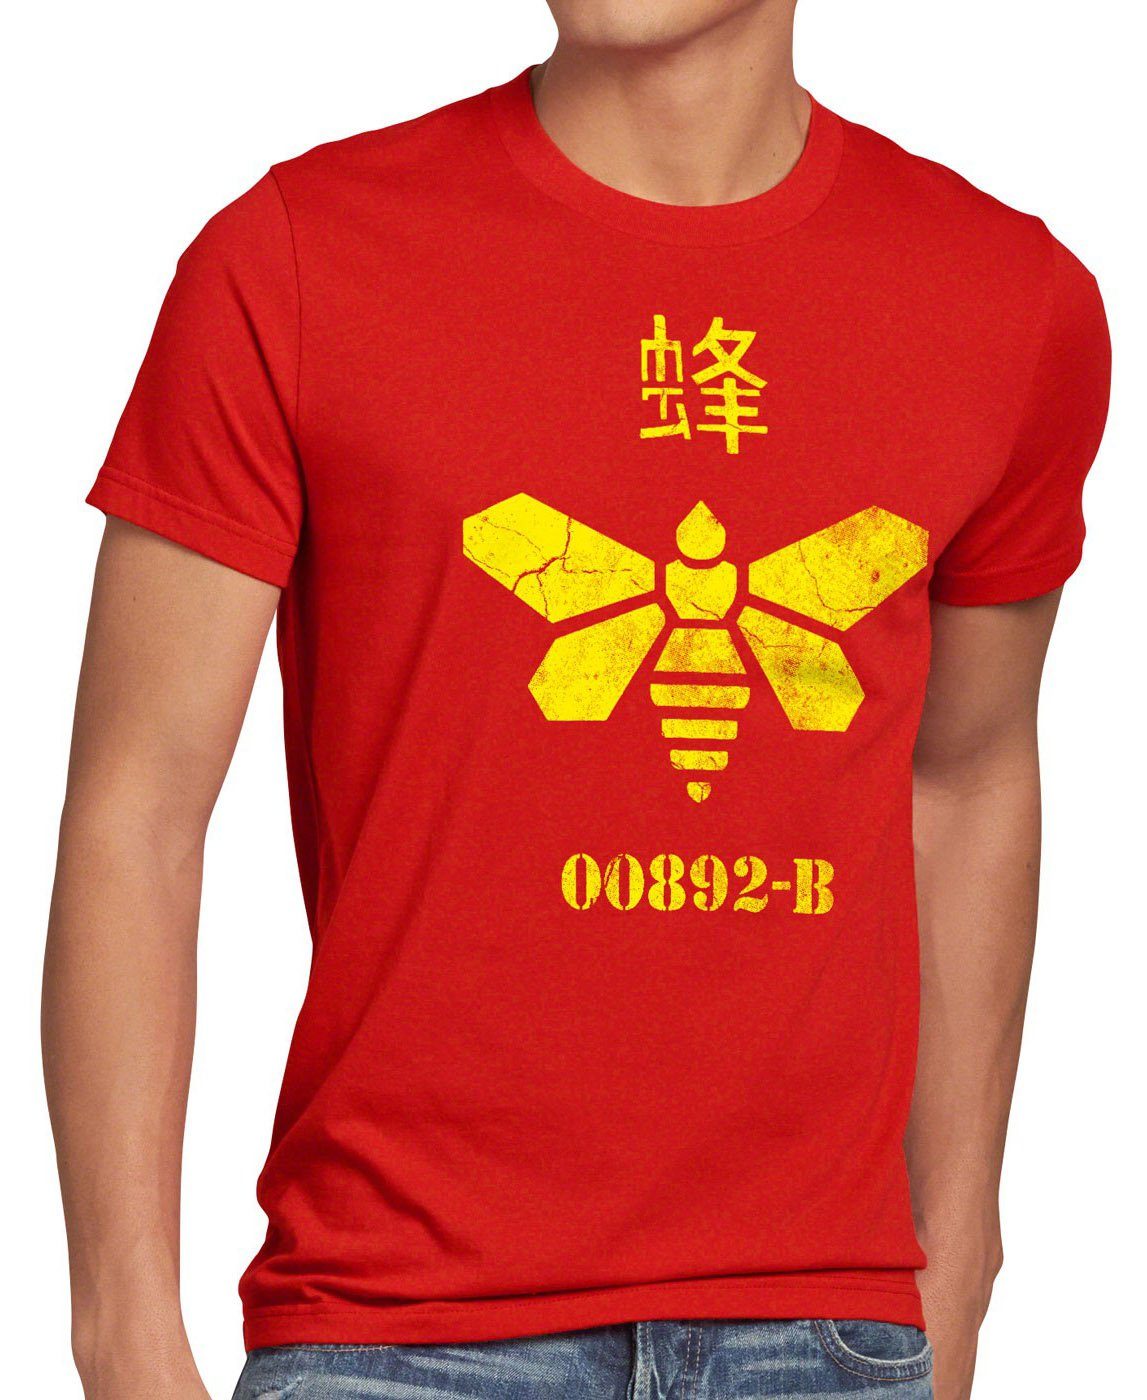 style3 Print-Shirt Herren T-Shirt Golden Moth Chemical breaking walter chemie bad biene heisenberg rot